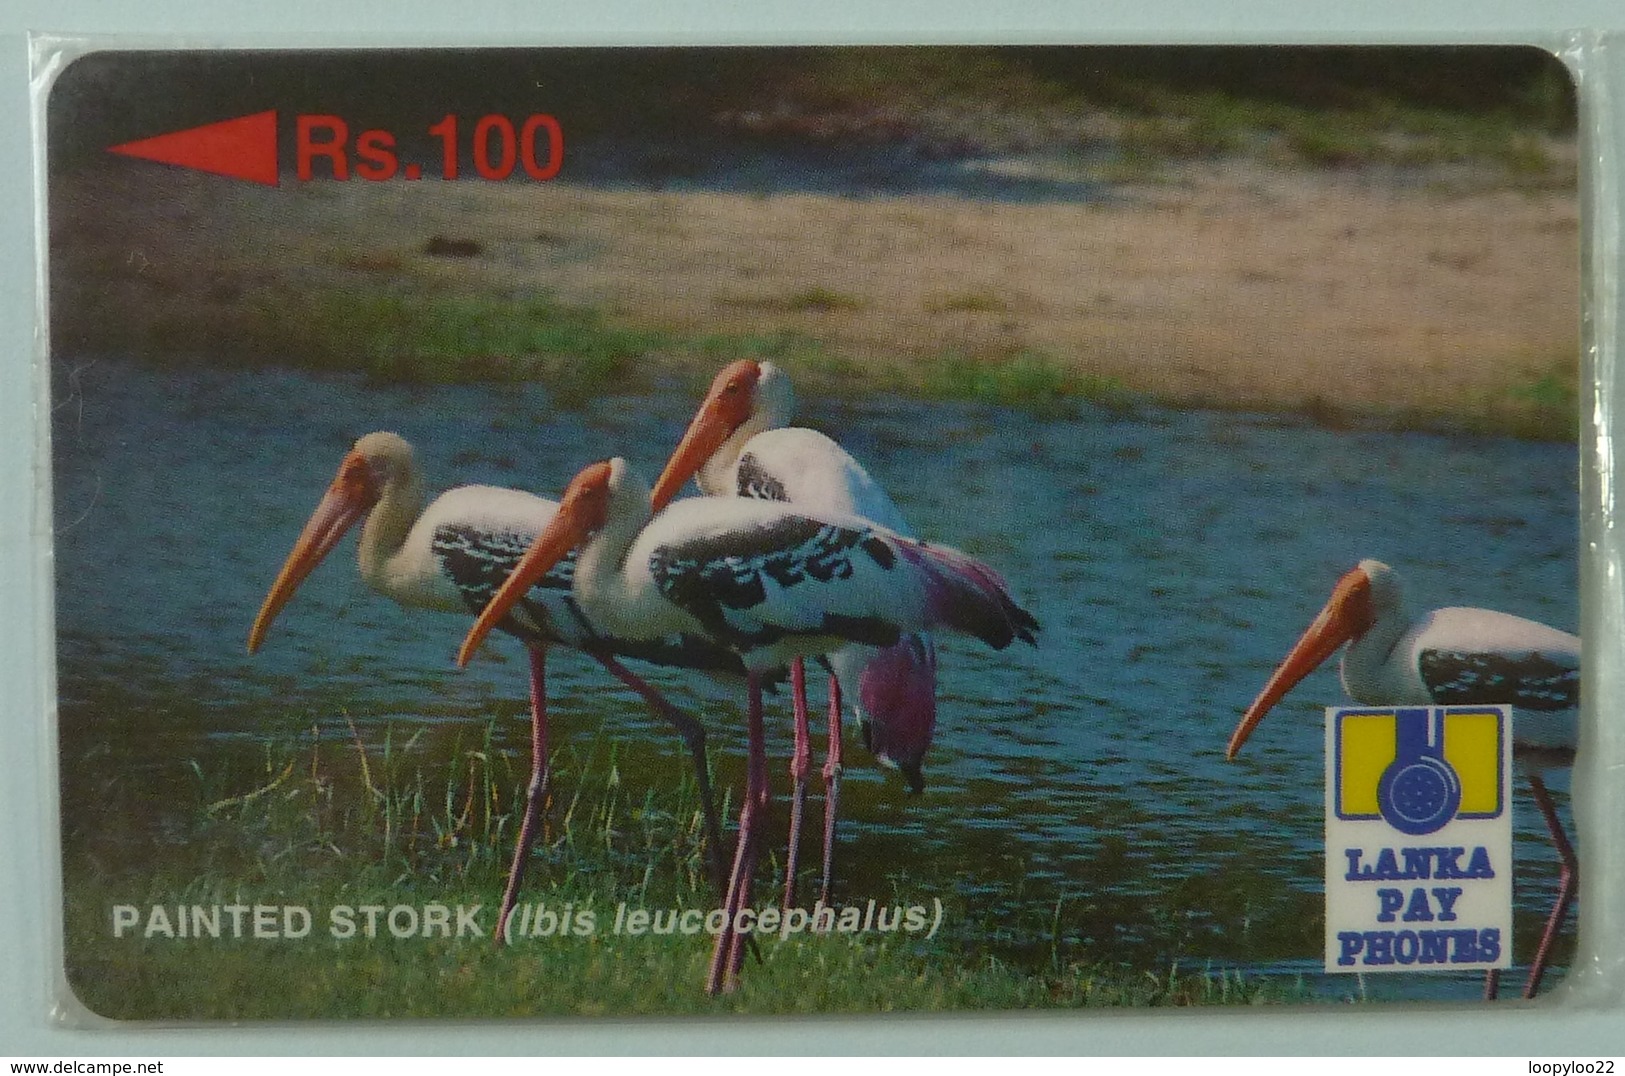 SRI LANKA - GPT - 21SRLA  - Rs 100 - Painted Stork - Mint Blister - Sri Lanka (Ceylon)